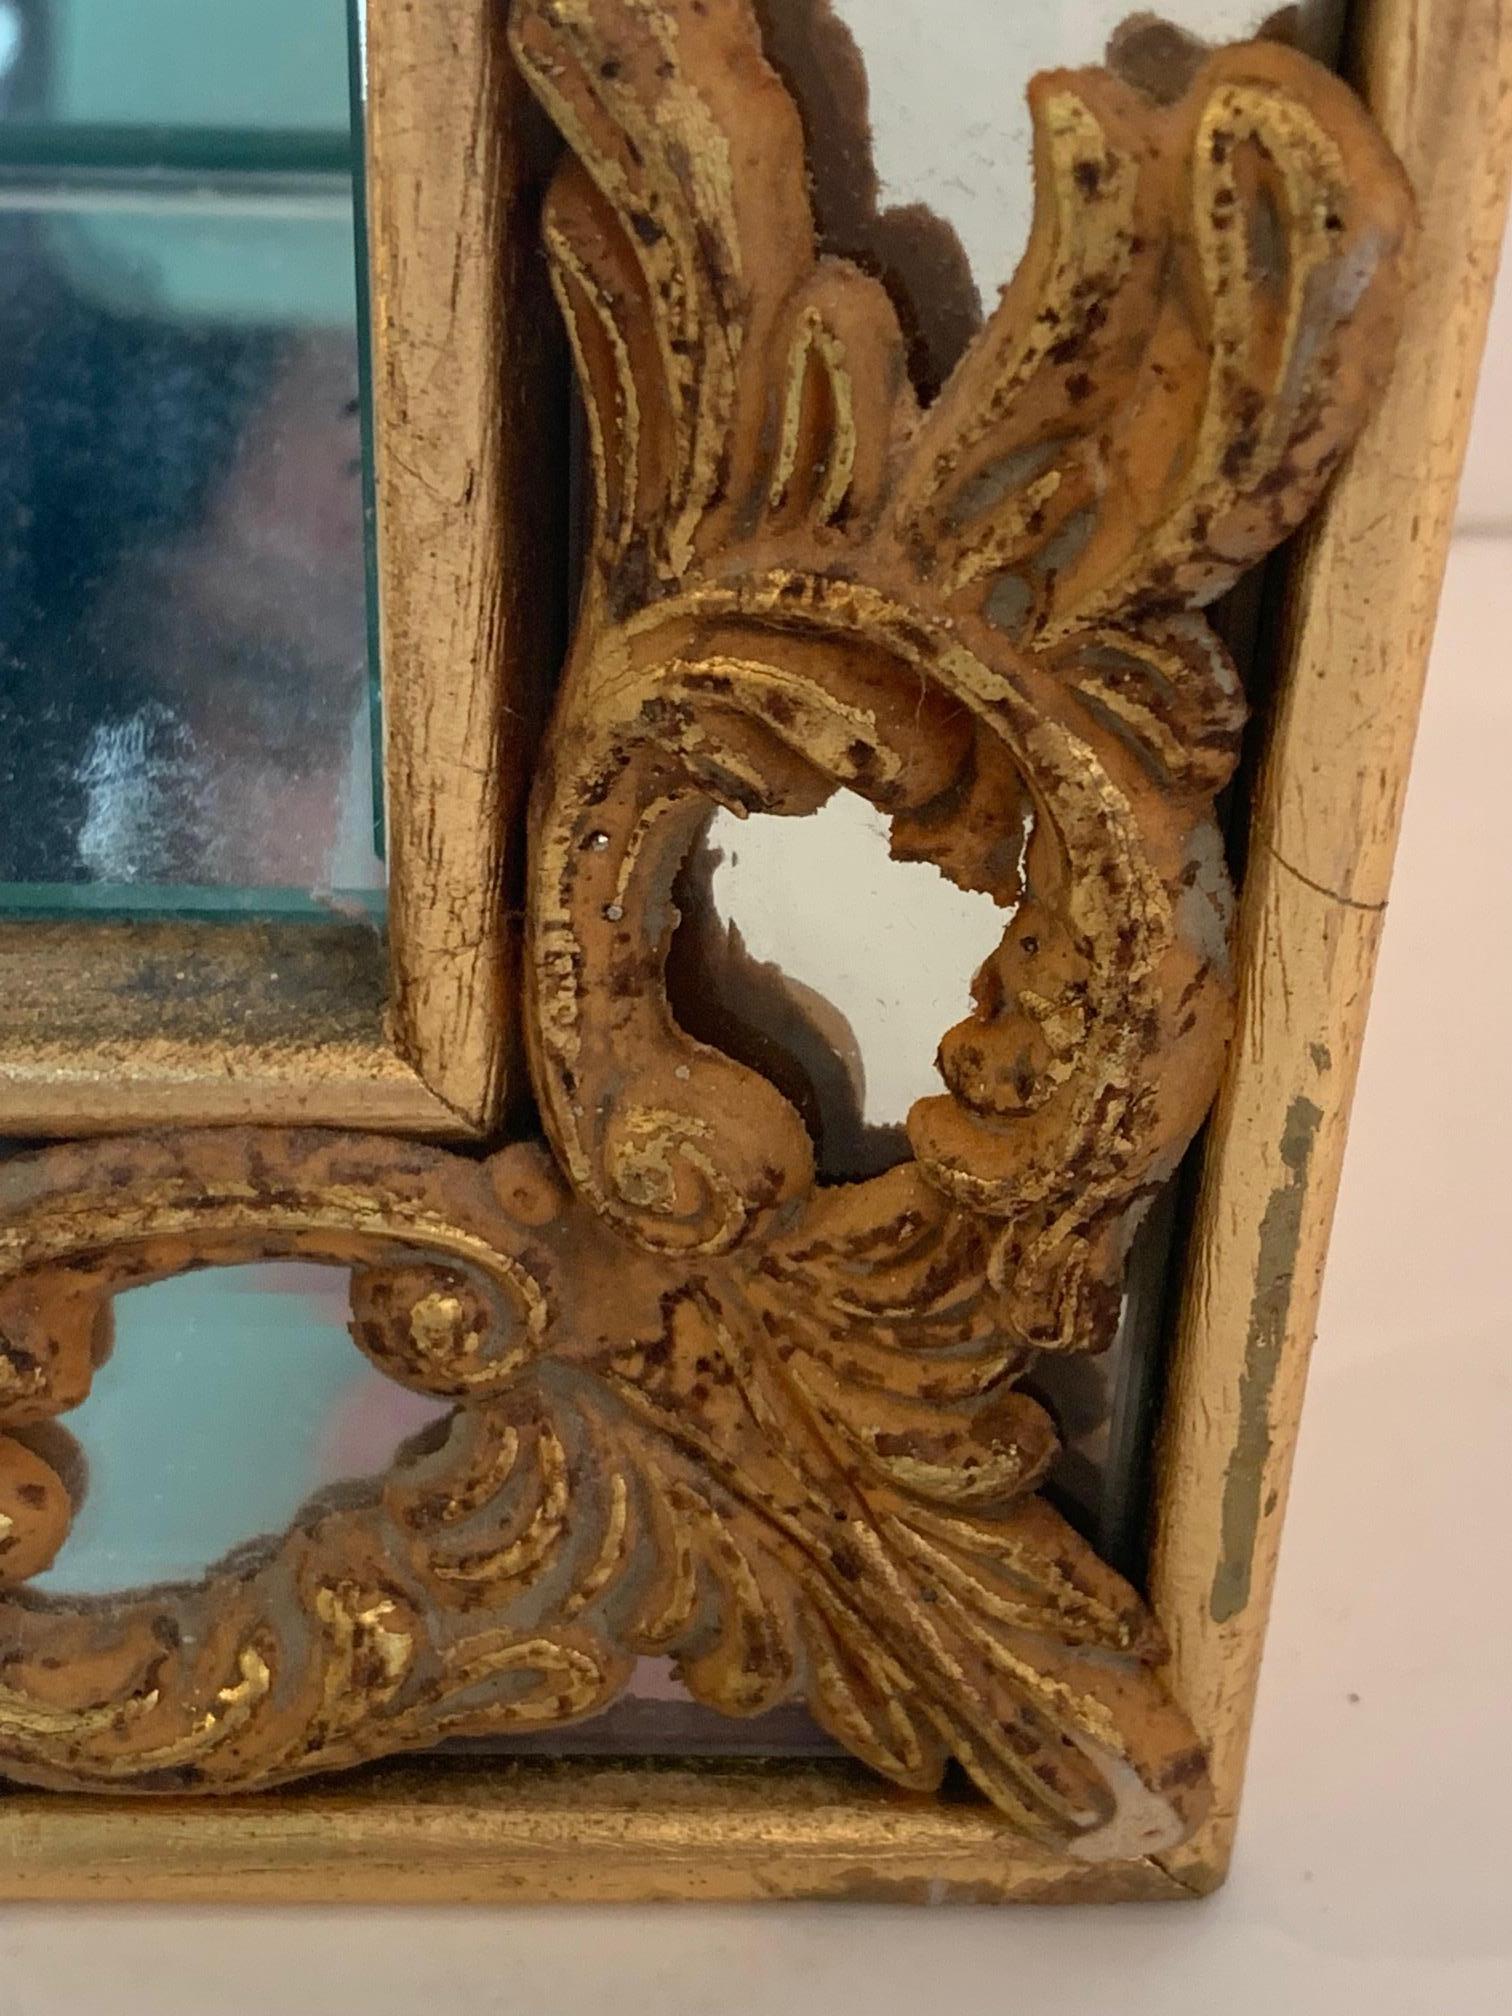 Glitzernde venezianische Hängevitrine aus vergoldetem Holz und Spiegeln, die eine rechteckige Schattenboxform mit schönen geschnitzten Goldverzierungen in jeder Ecke hat. Aus dem Innenraum ragen zwei Glasböden hervor, auf denen besondere Gegenstände